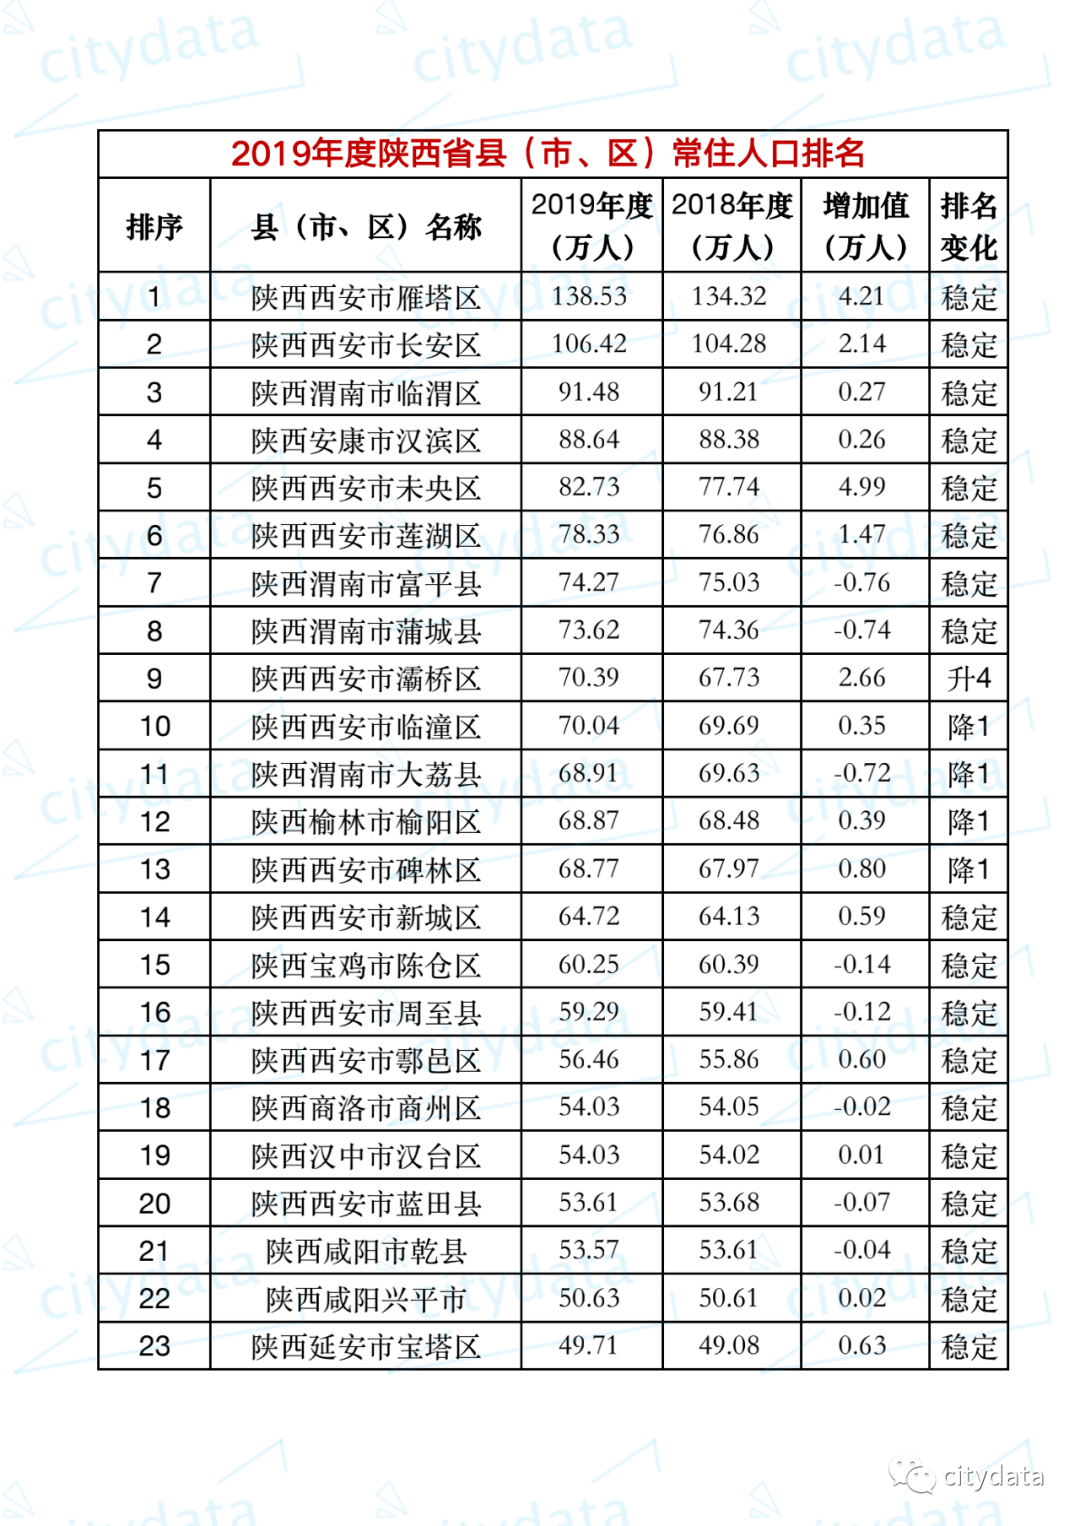 陕西各市人口排名_2018年陕西各市排名 西安市人口最多GDP第一,榆林市人均第一